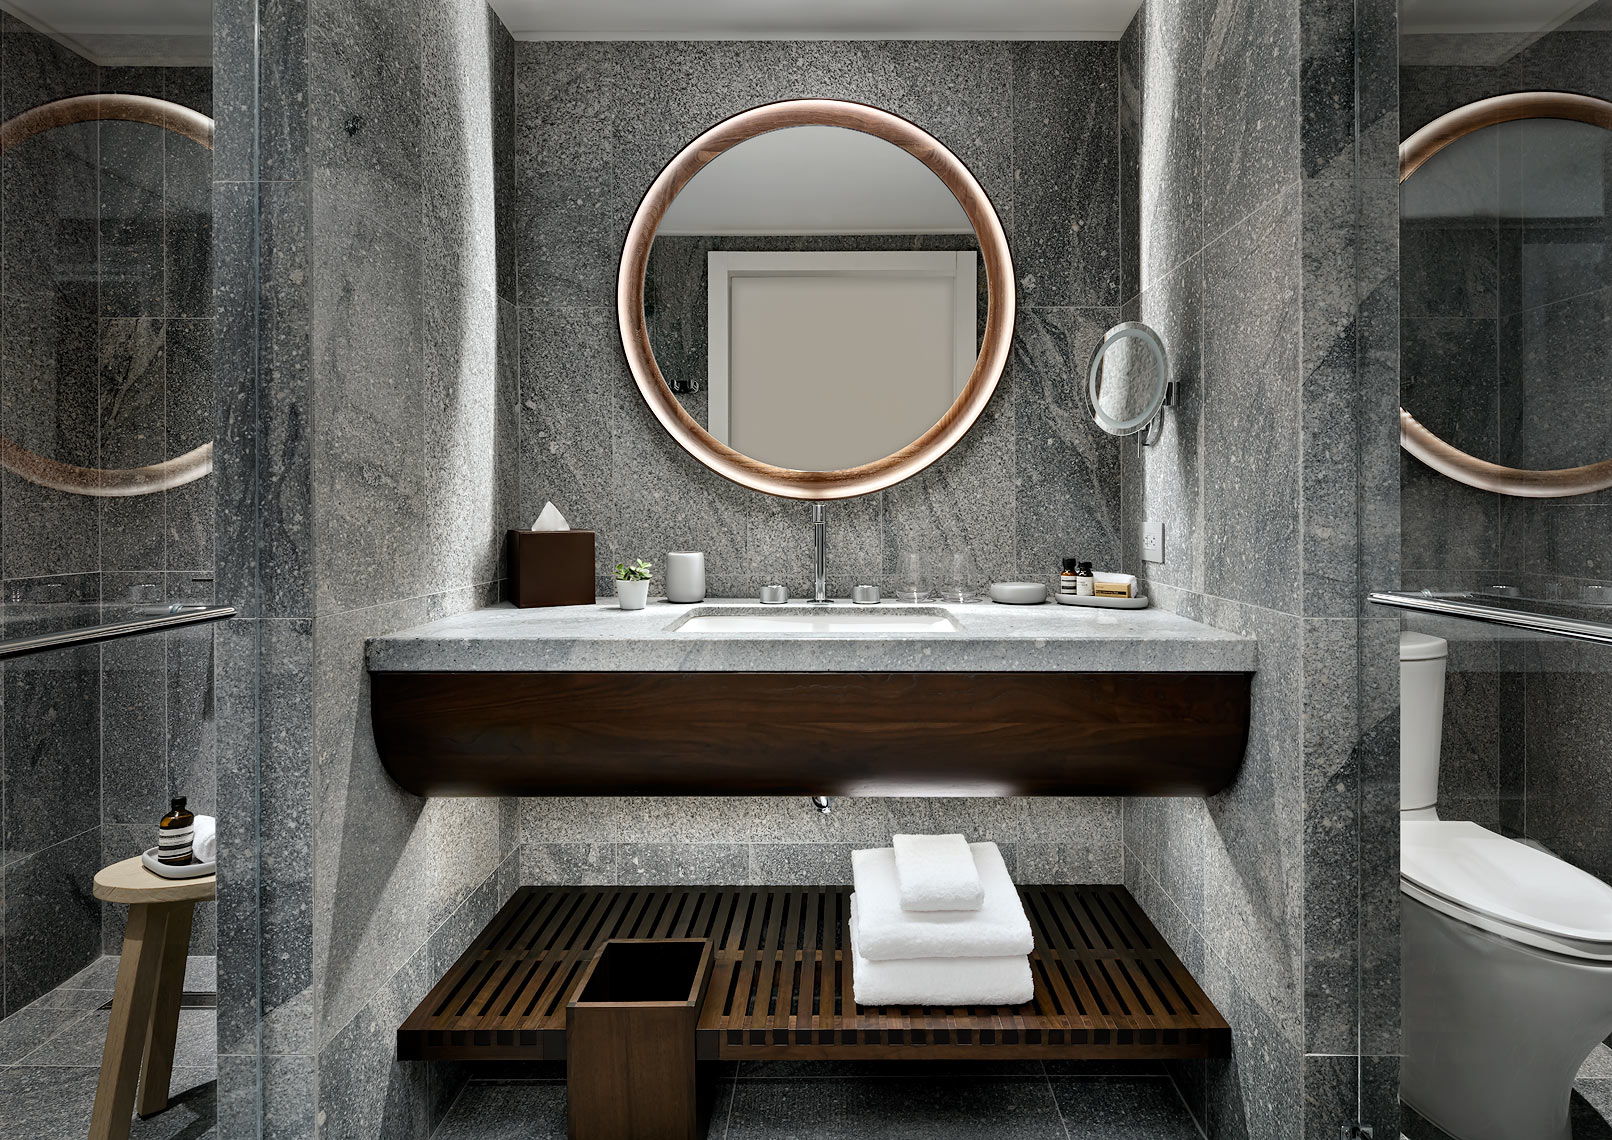 Muir Hotel Halifax, Canada - Bathroom. Design by Studio Munge